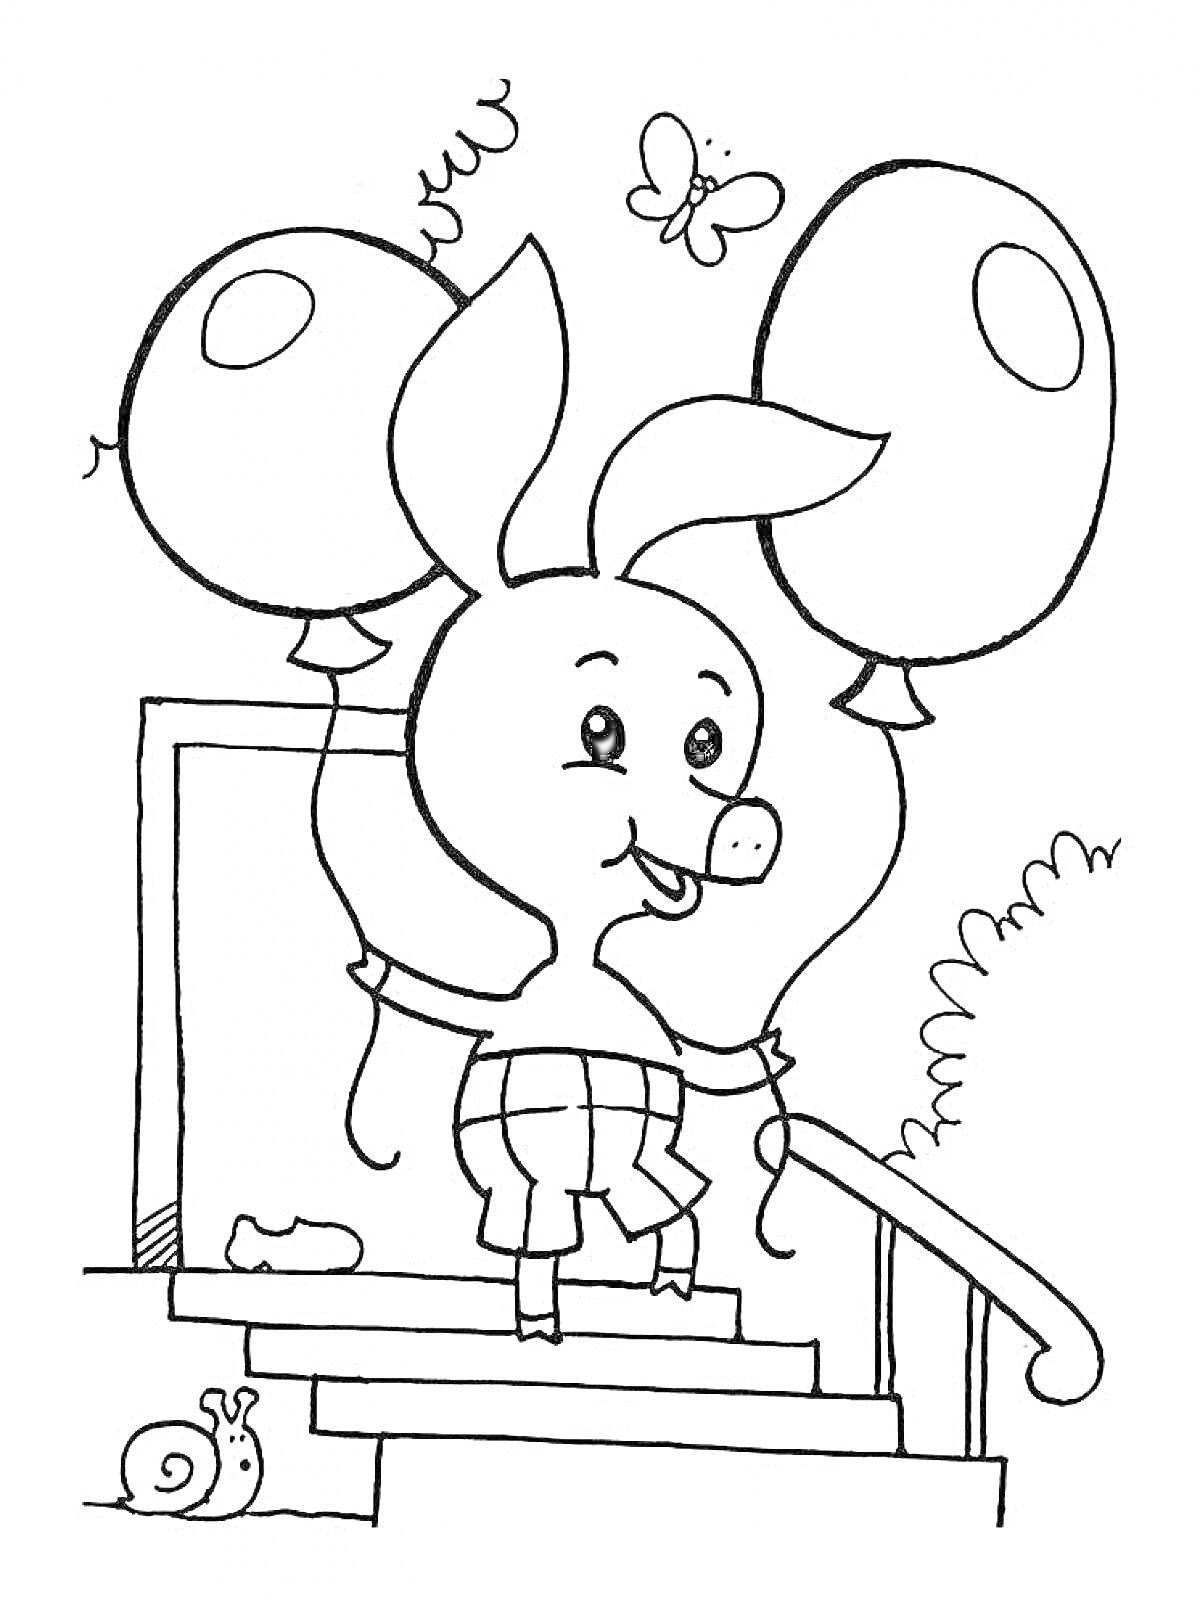 Раскраска Пятачок на лестнице с двумя шарами, улитка, котенок и бабочка